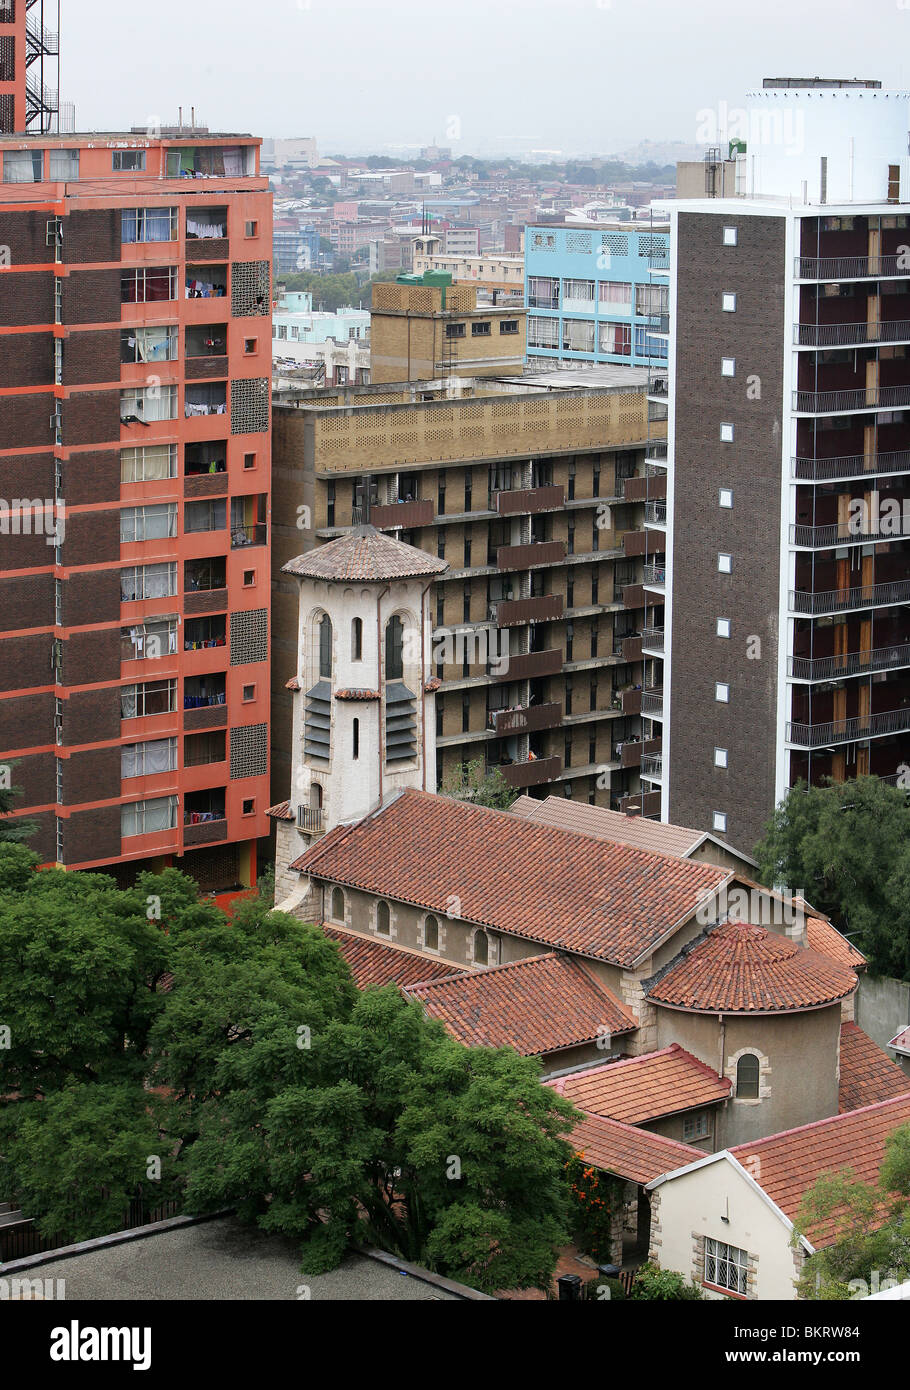 La paz de la iglesia luterana en el medio de la vivienda-casas en el barrio de Hillbrow, Johannesburgo, Sudáfrica Foto de stock